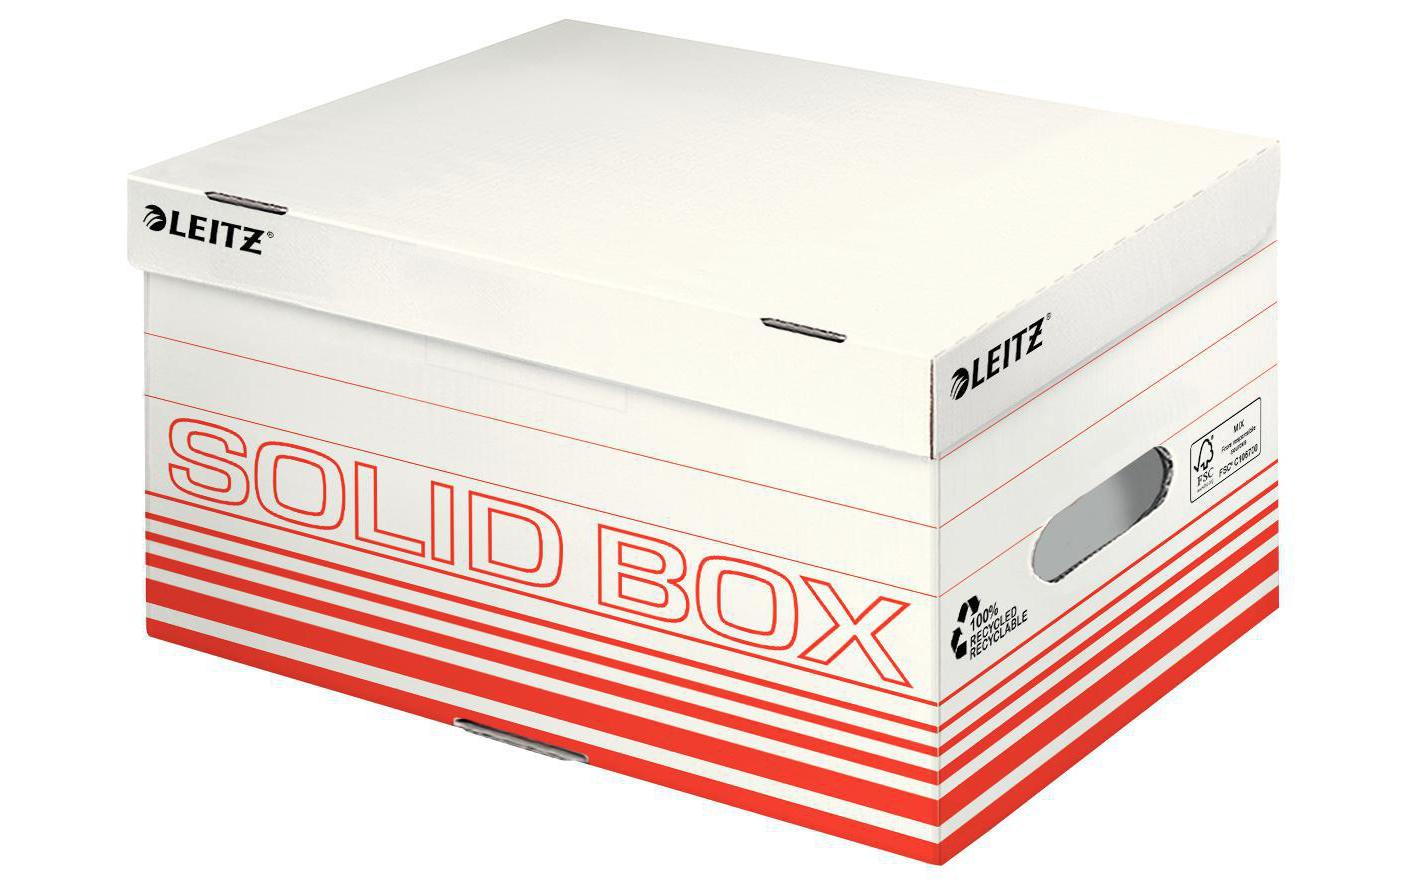 Leitz Archivschachtel Solid Box S Klappdeckel, 10 Stück, Rot